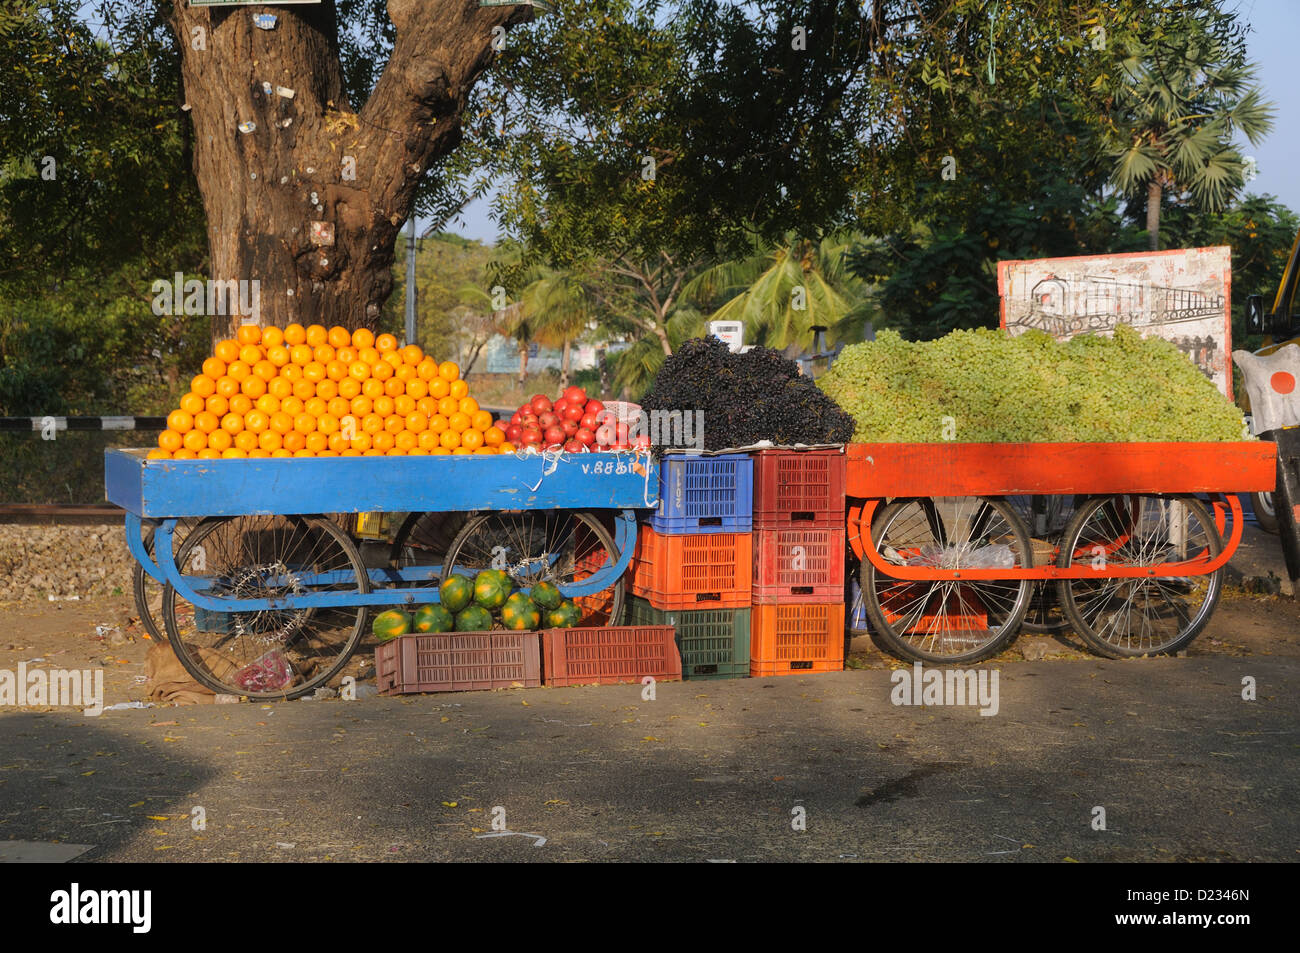 Eine Mobile Frucht stall beim Erodieren, Tamil Nadu, Indien Stockfoto